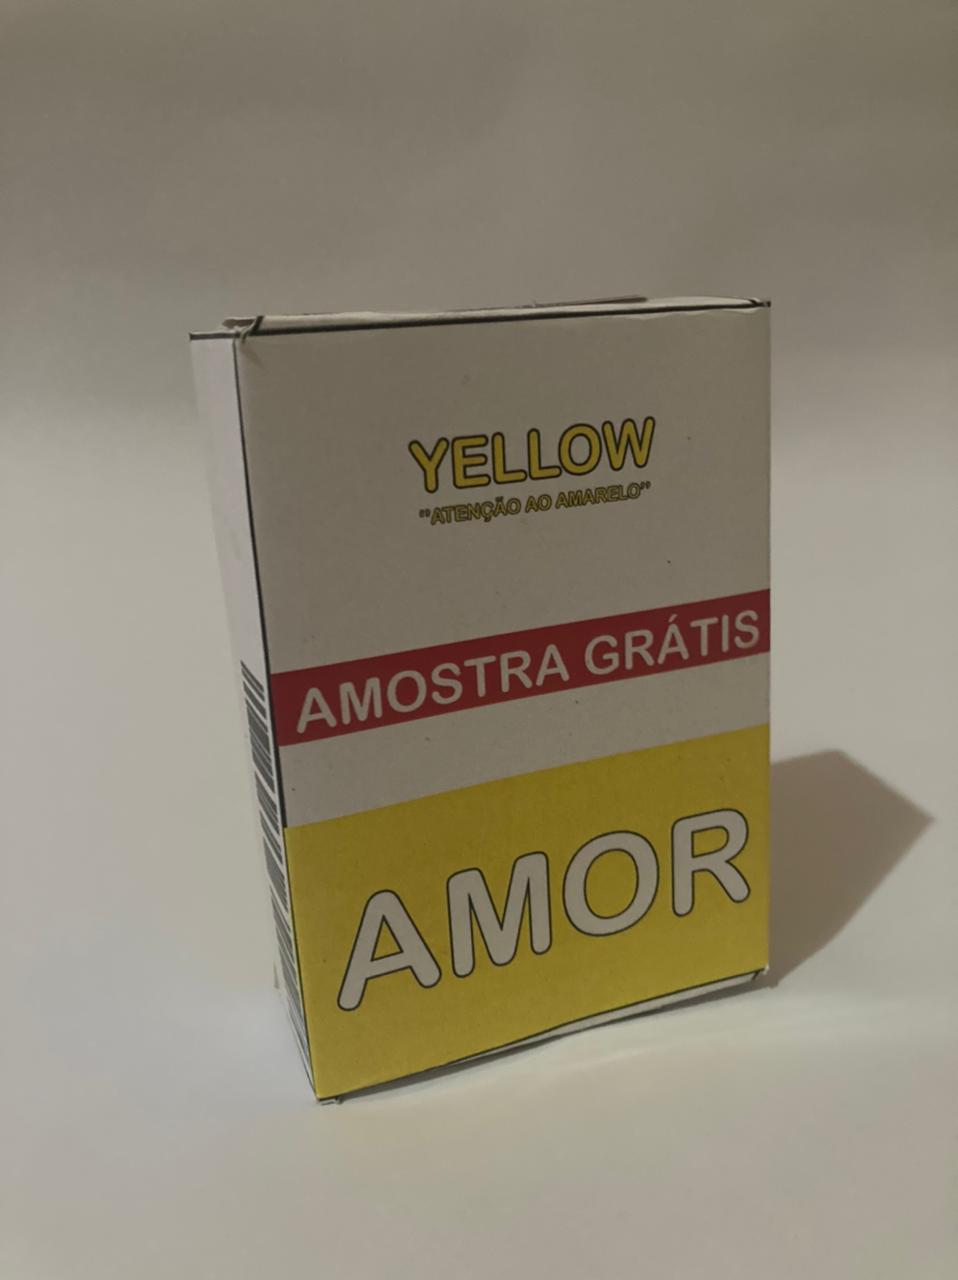 צהוב "תשומת לב לצהוב", מינון של אהבה. תמונות: גילוי.